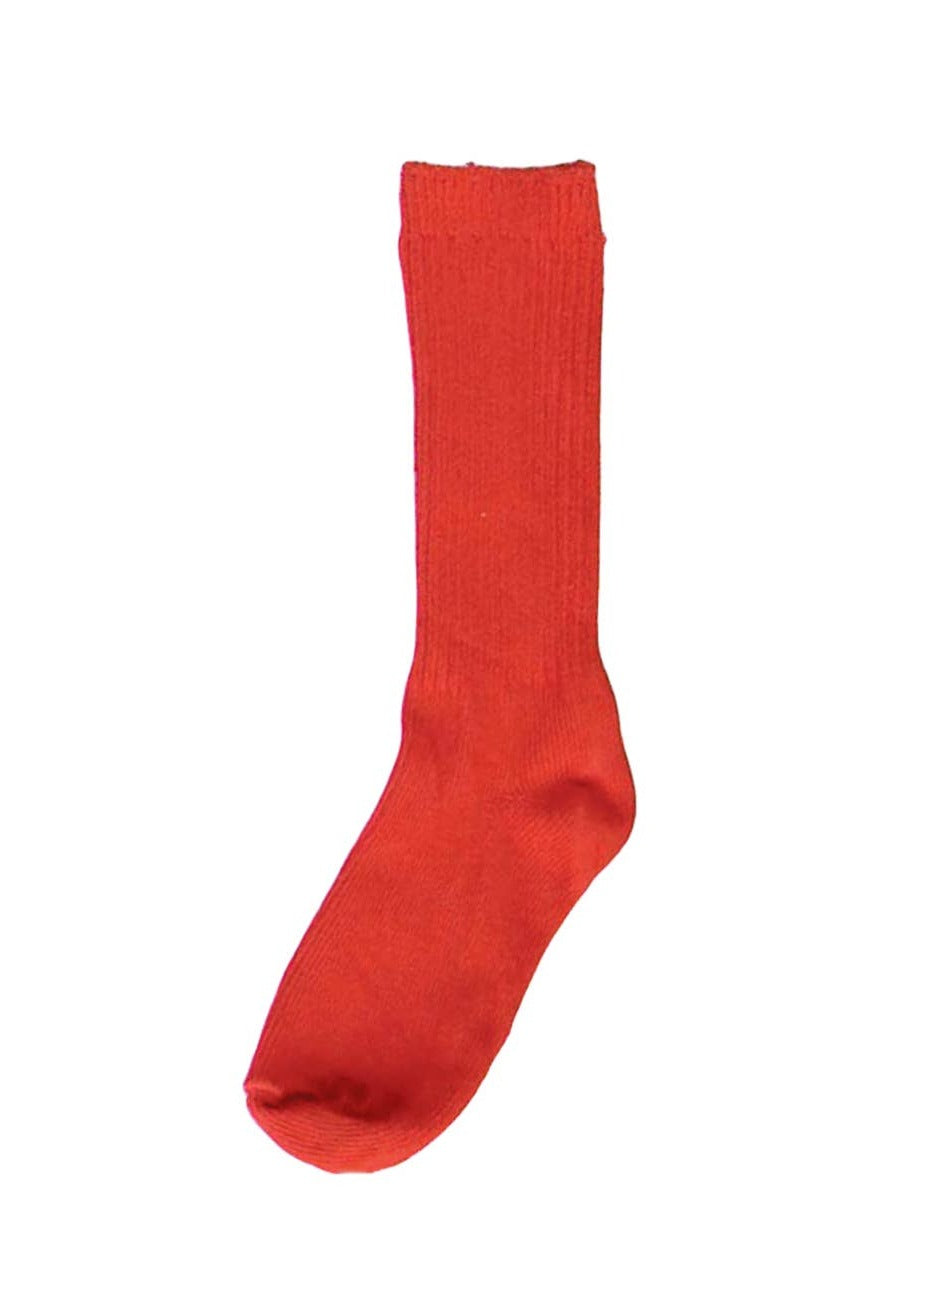 Dyed Cotton Socks, Shocking Red